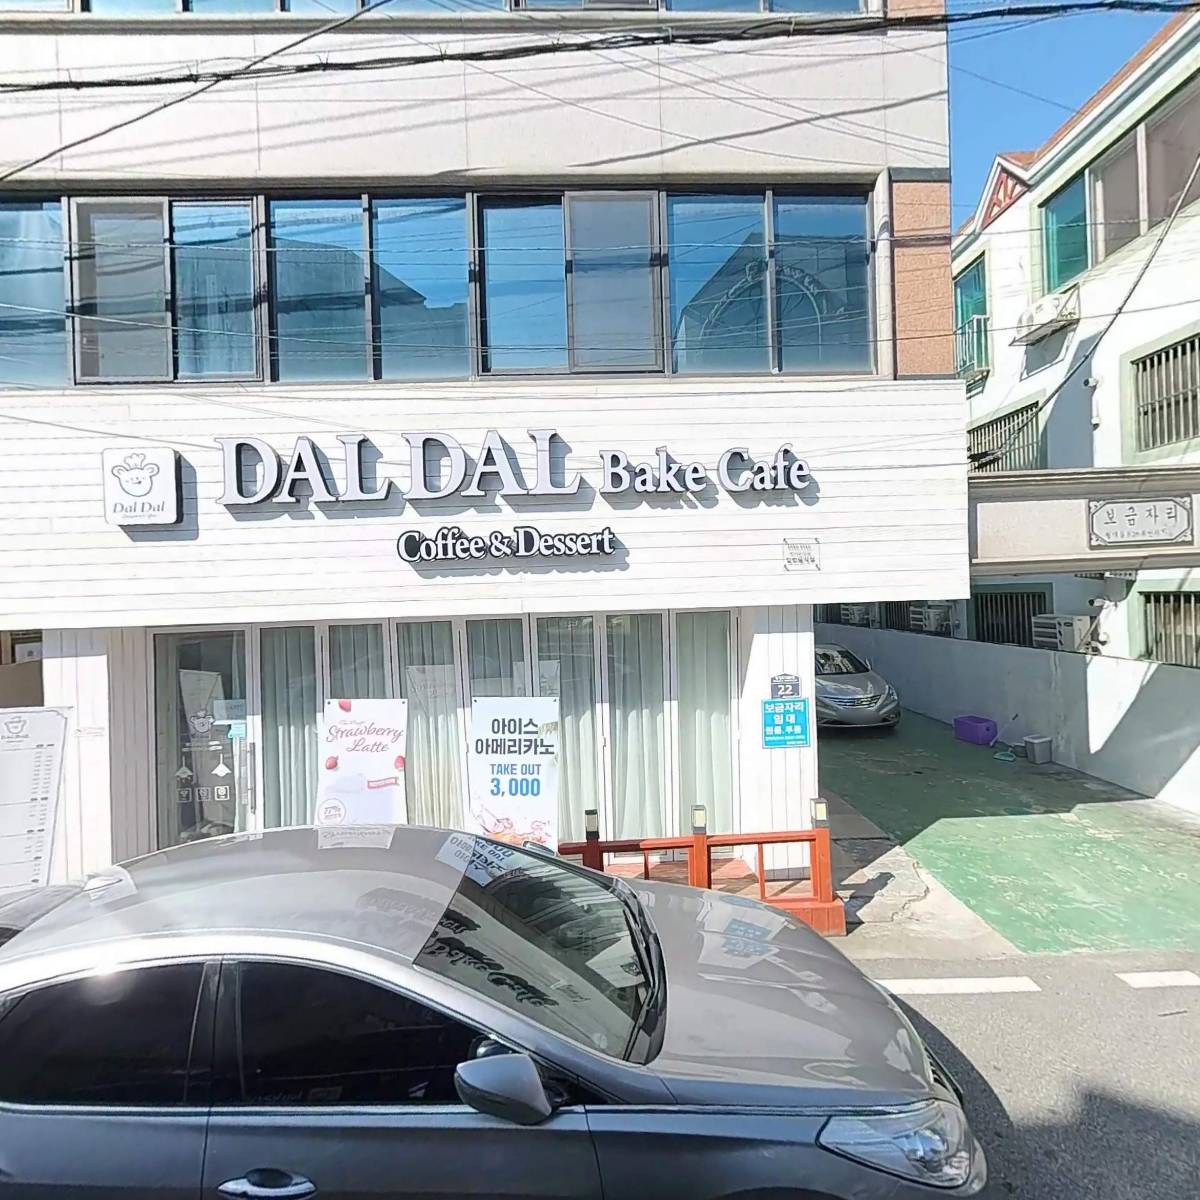 달달(DAL DAL) BaKe Cafe